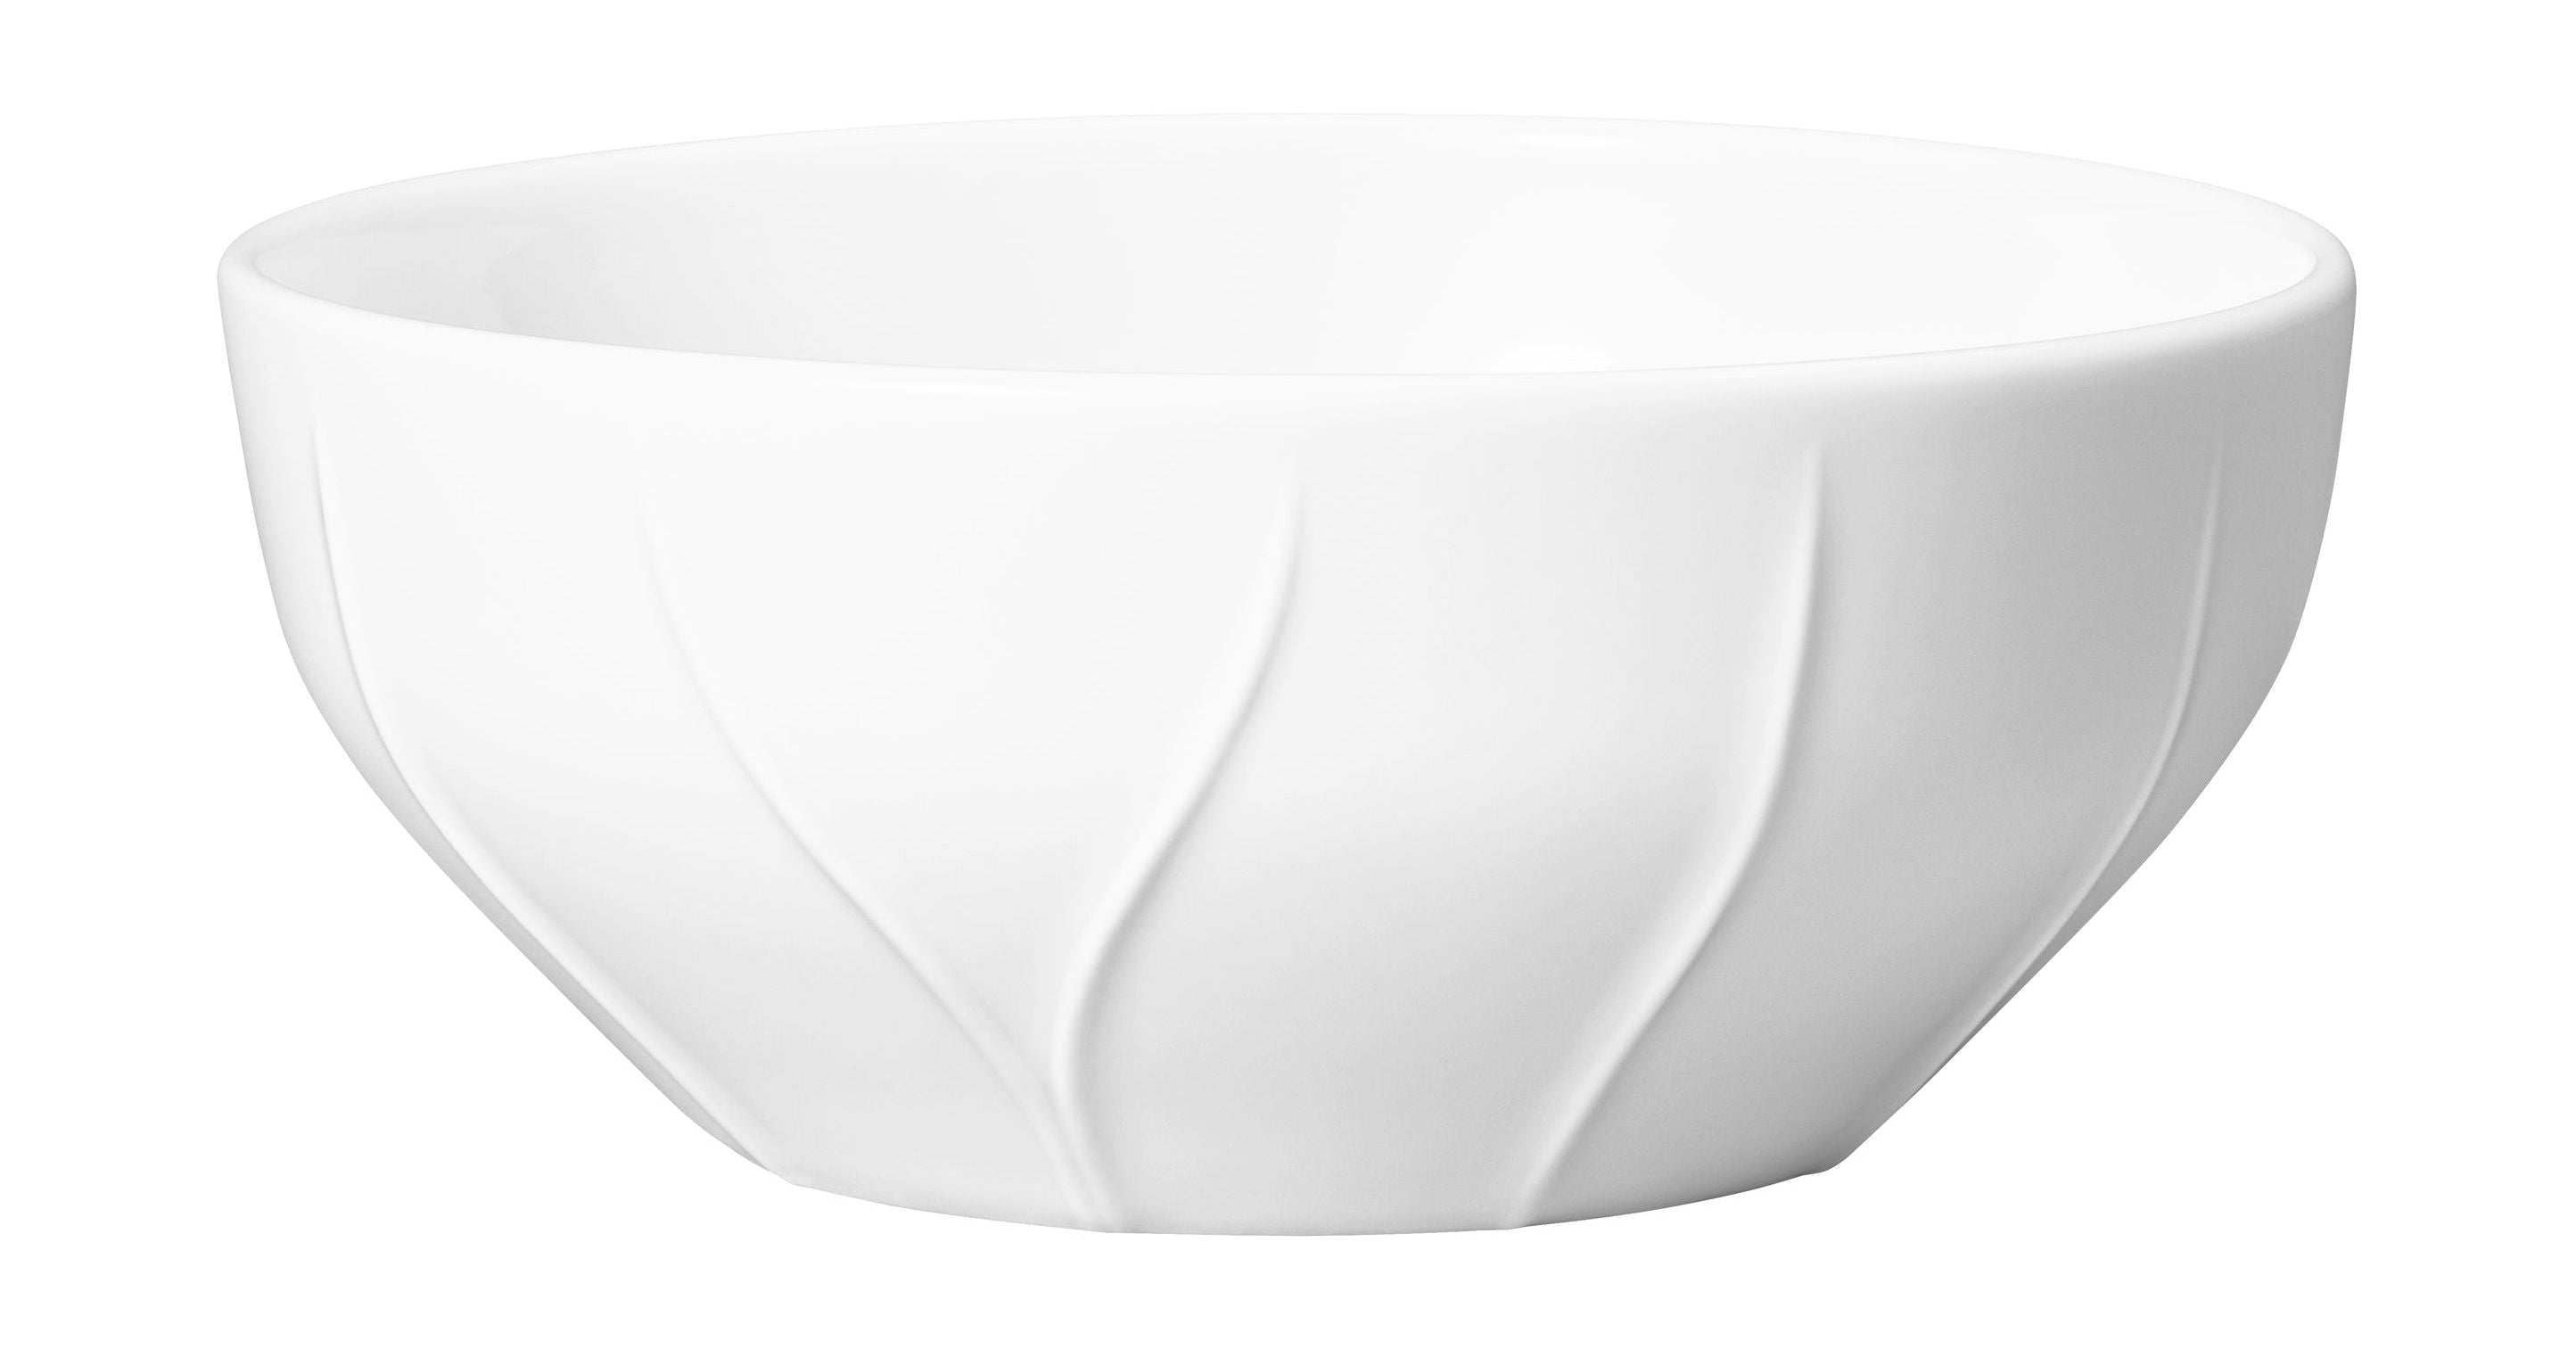 Rörstrand Pli Blanc Bowl, 35 Cl